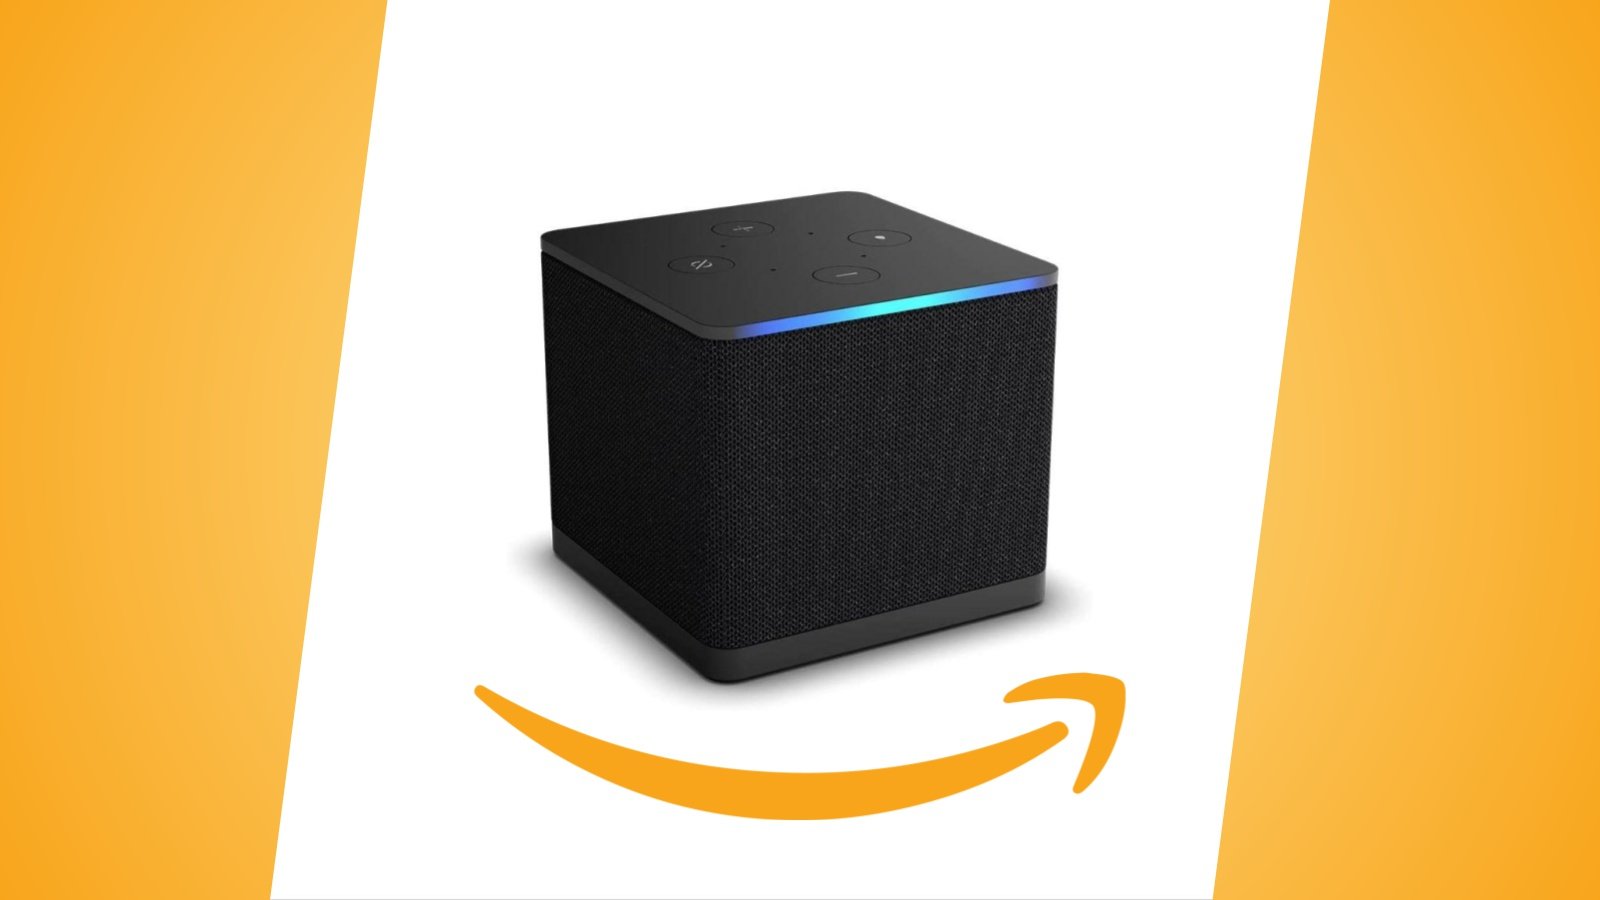 Offerte Amazon: Fire TV Cube e Fire TV Stick in sconto, vediamo i prezzi ora proposti